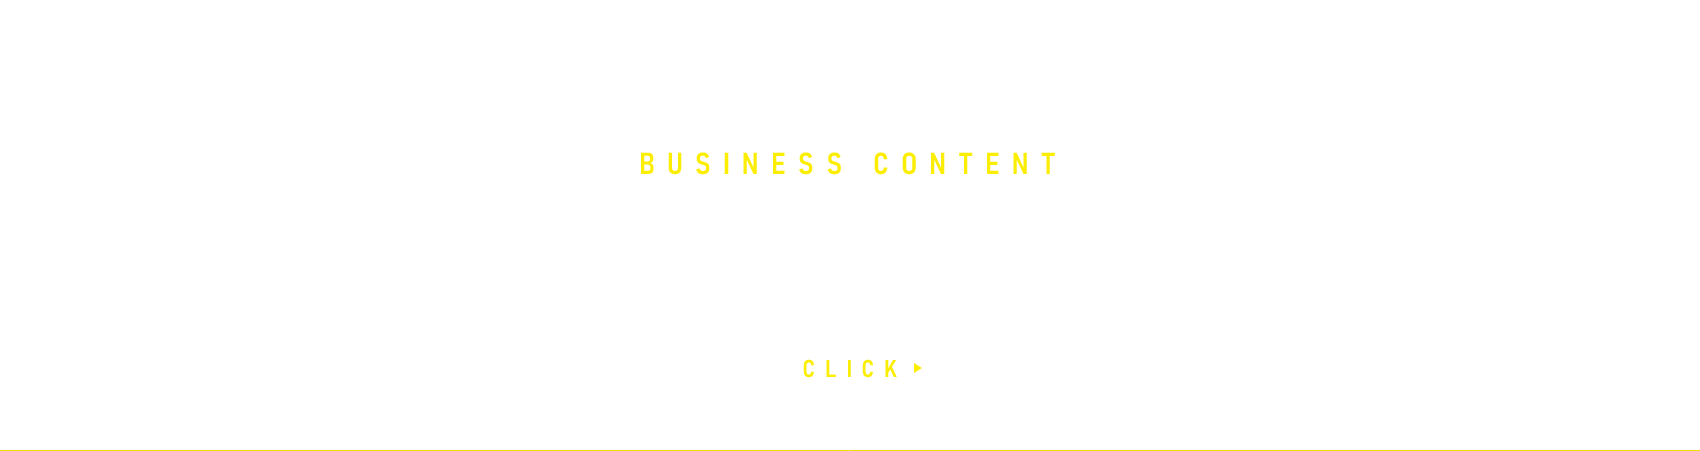 banner_business_full